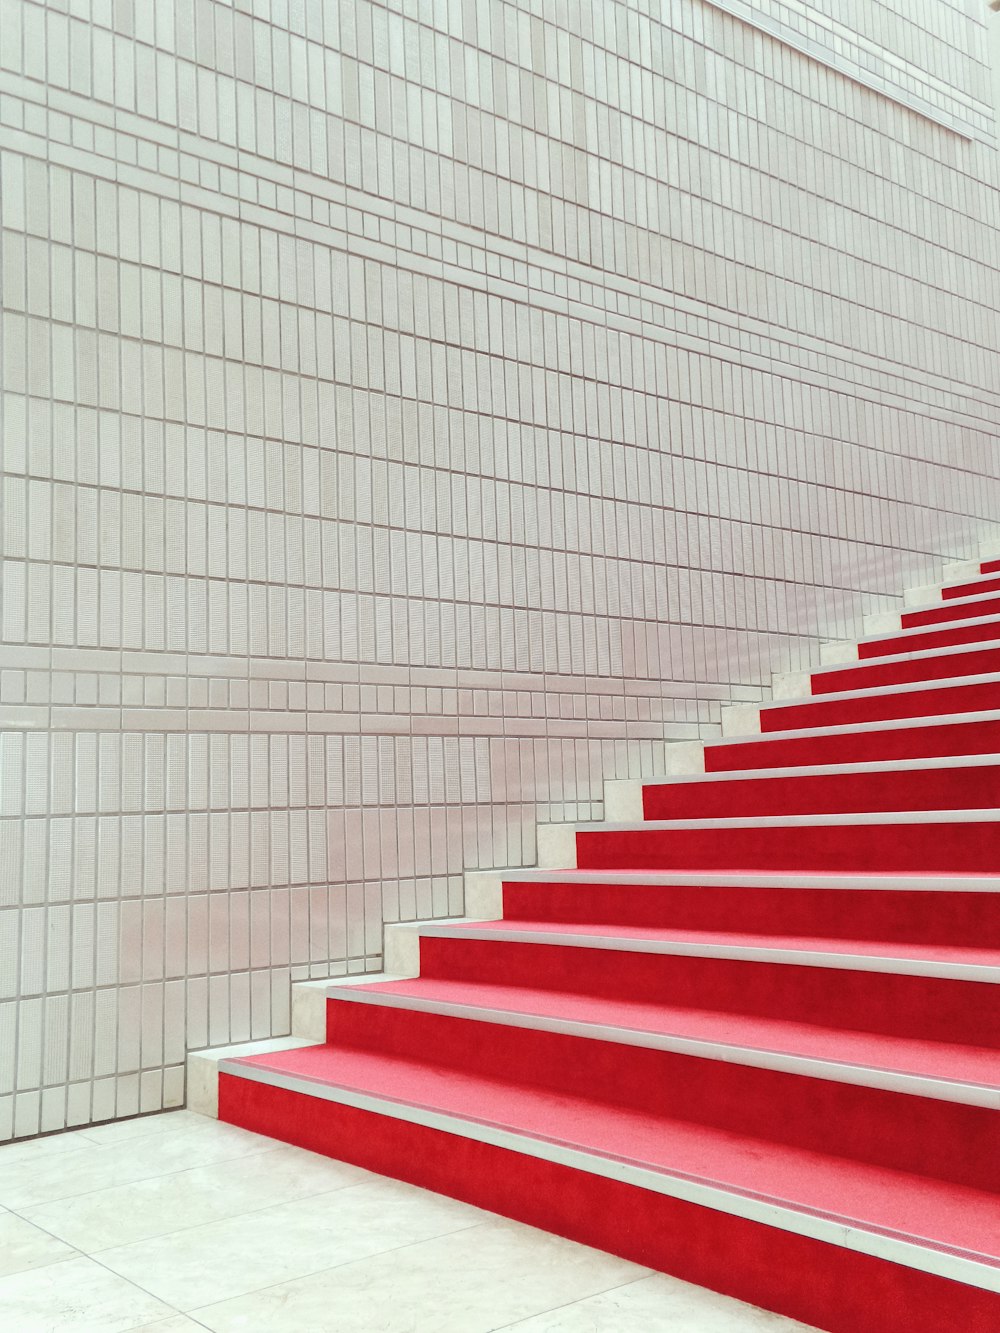 Escaliers rouges et blancs